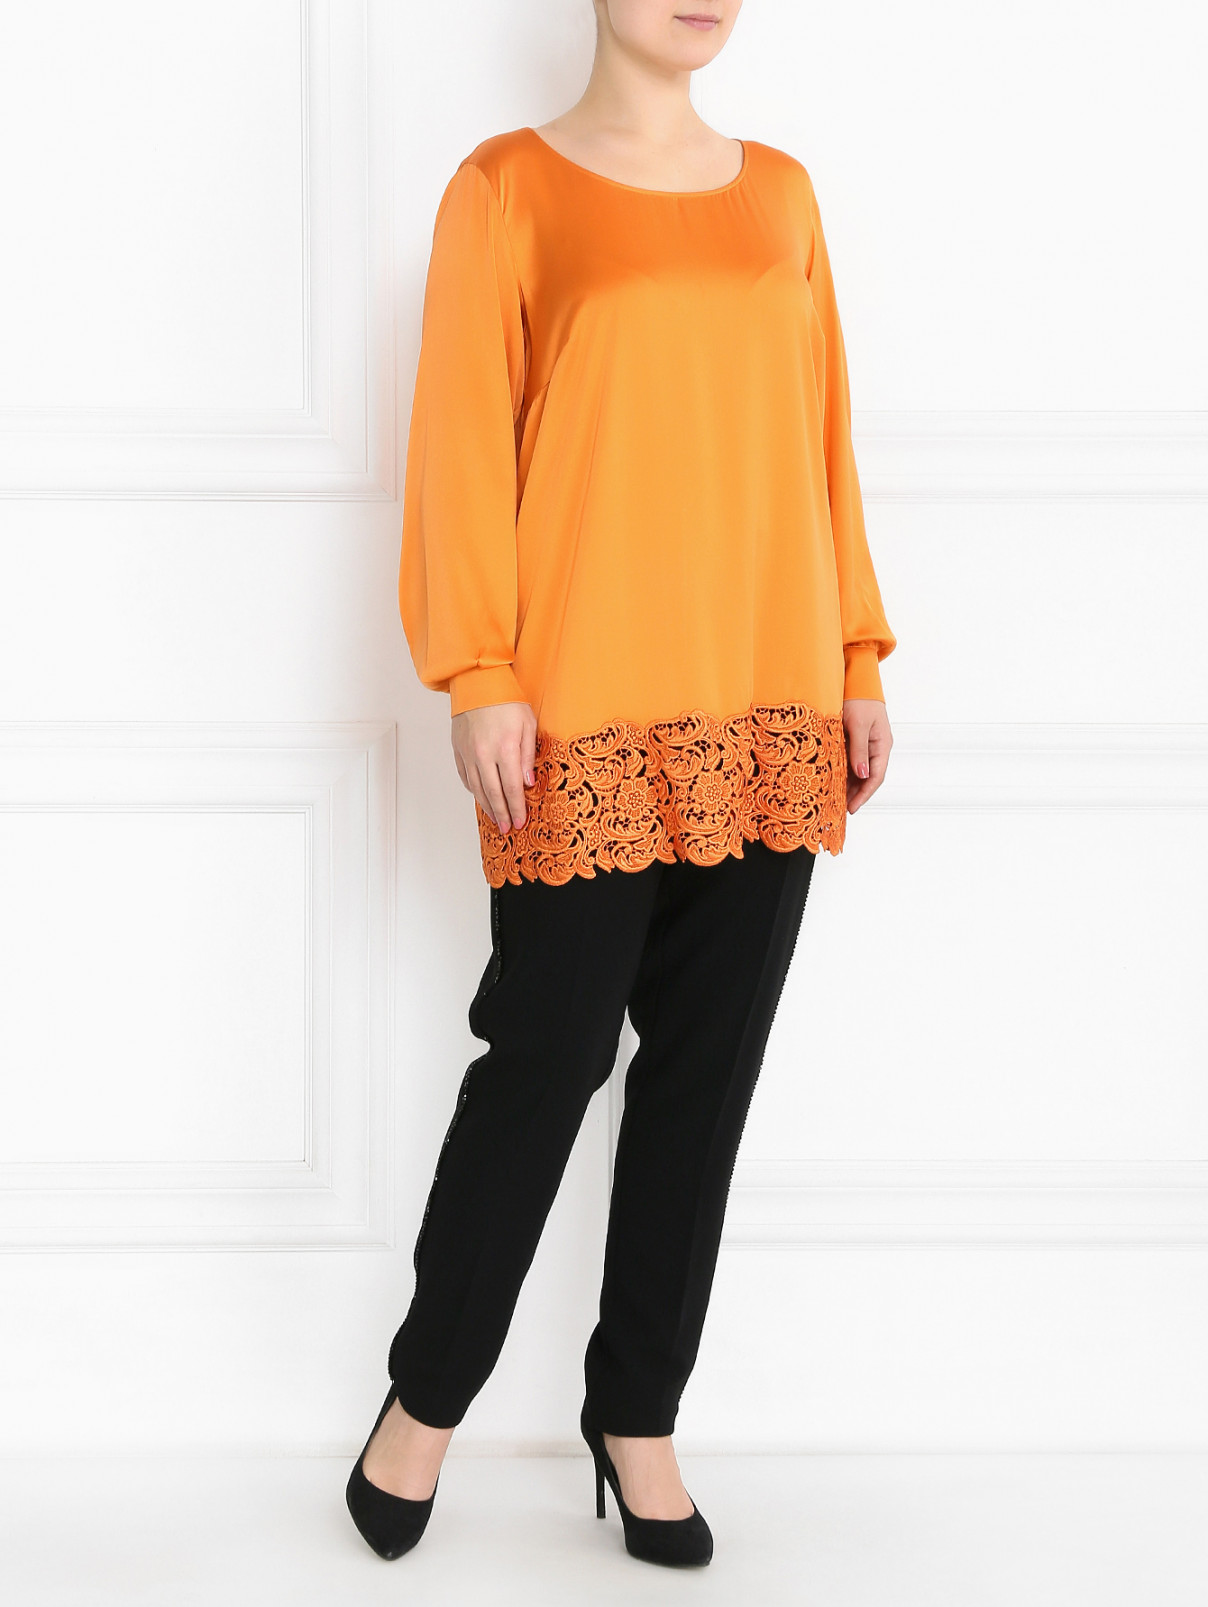 Удлиненная блуза из шелка с кружевной отделкой Marina Rinaldi  –  Модель Общий вид  – Цвет:  Оранжевый